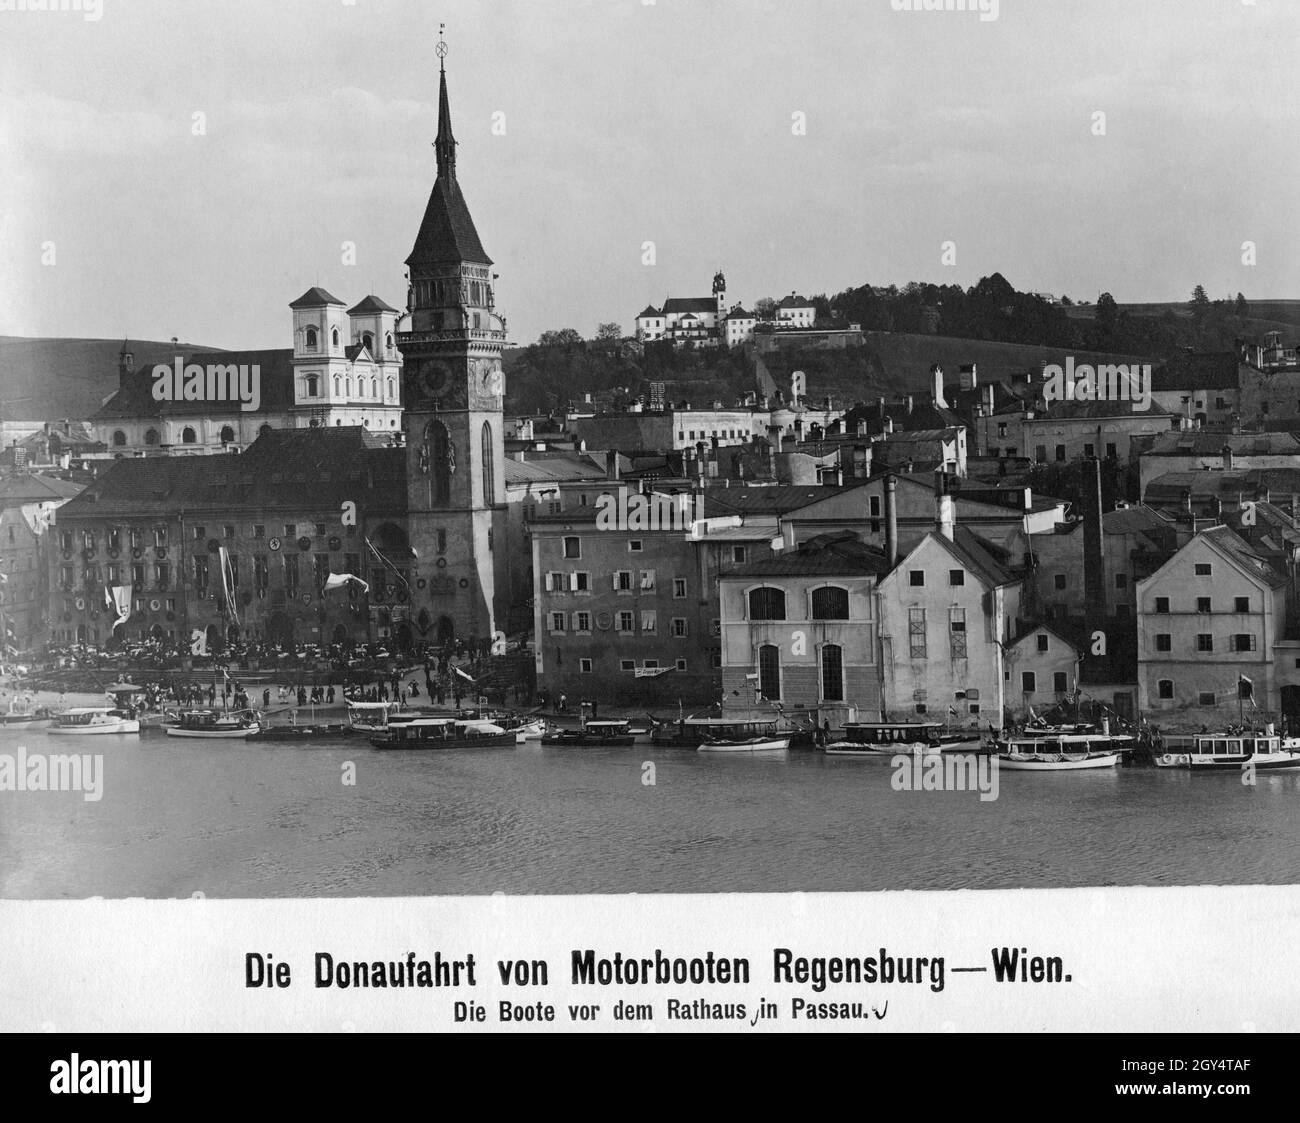 Im Jahr 1909 fand eine Donaukreuzfahrt von Regensburg nach Wien statt. Die teilnehmenden Motorboote haben auf diesem Foto am Donaukai in Passau angedockt. Auf dem Rathausplatz vor dem Rathausturm haben sich Menschen versammelt. Im Hintergrund ist die Kirche St. Michael (links) und das Kloster Mariahilf über der Innstadt zu sehen. [Automatisierte Übersetzung] Stockfoto